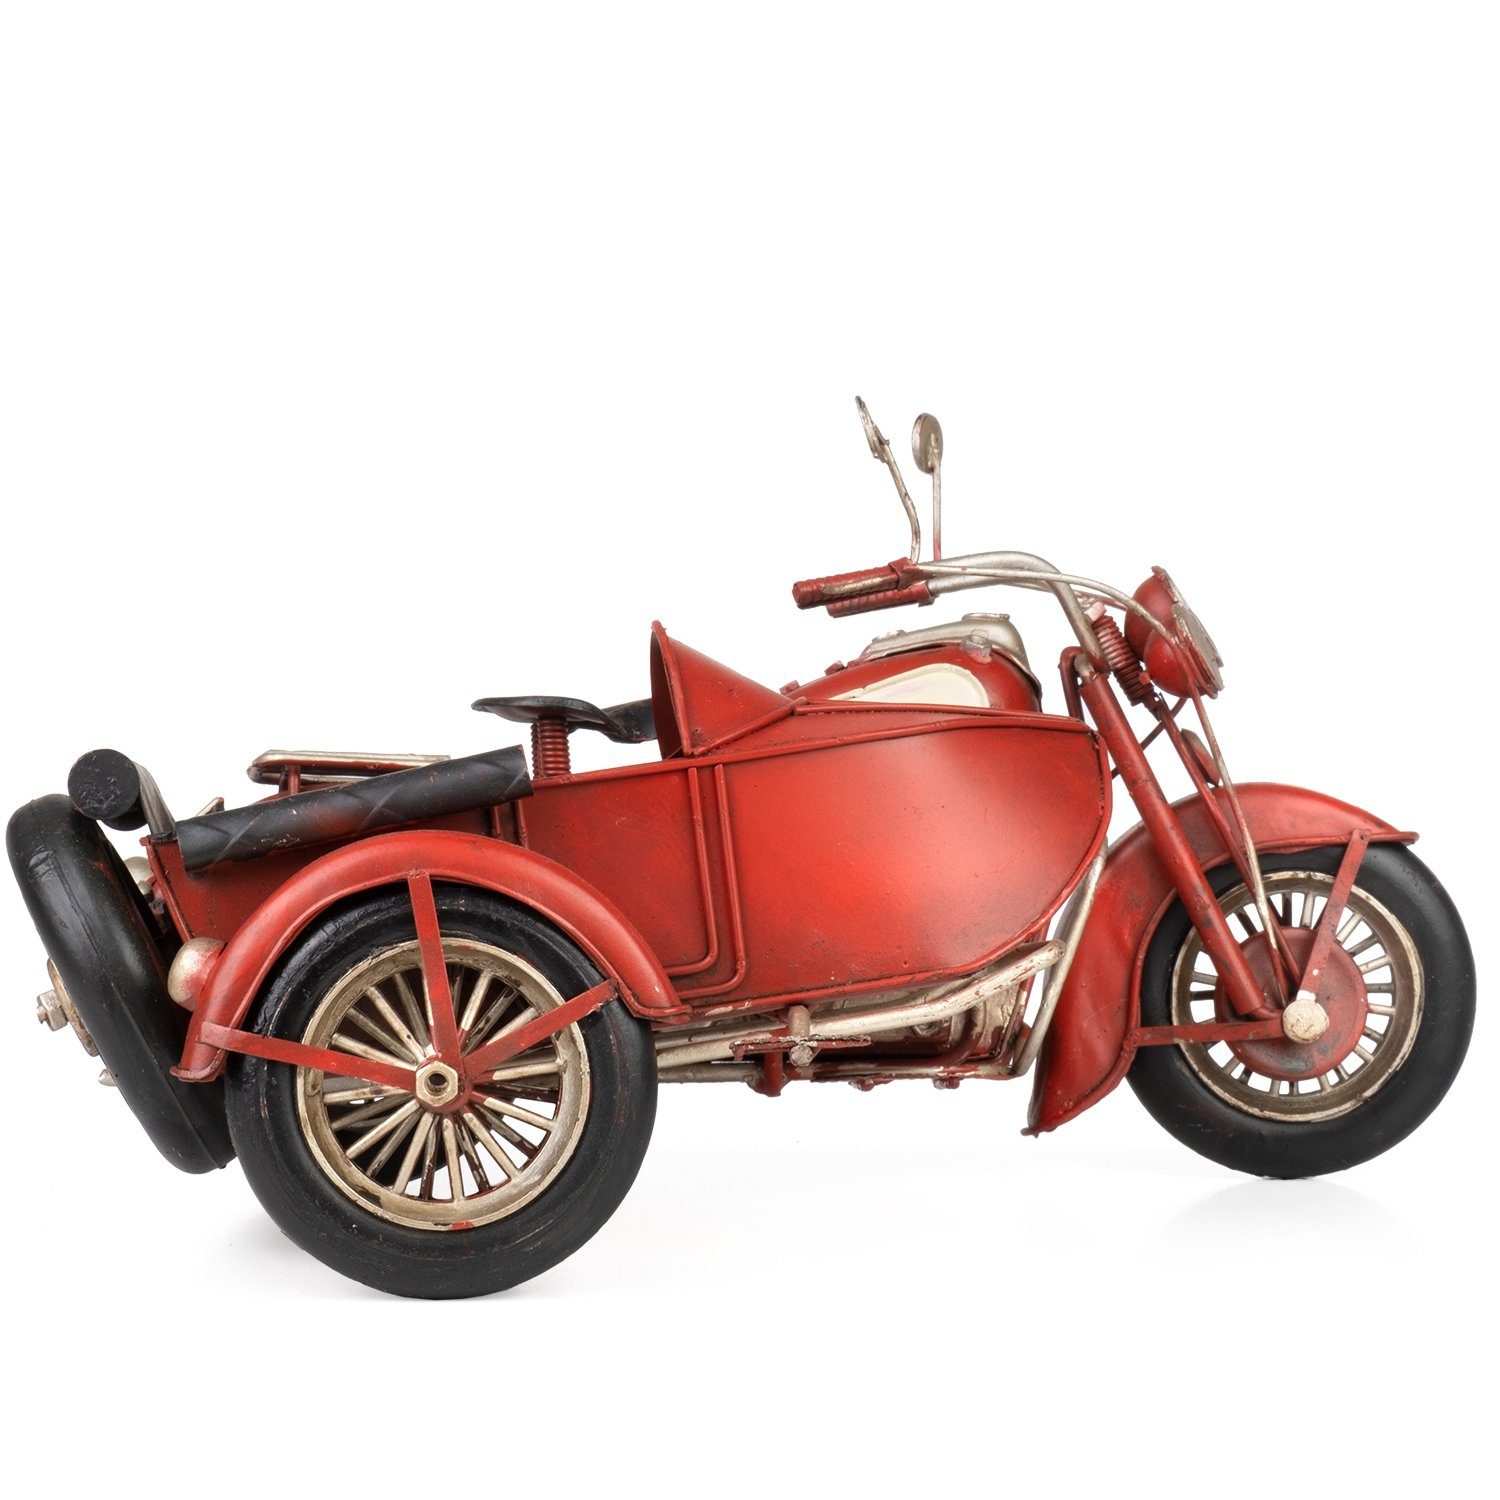 Moritz weiß, Retro Blech-Deko Motorrad mit Blechmodell Miniatur rot Antik-Stil Nachbildung Dekoobjekt Modell Beiwagen Nostalgie